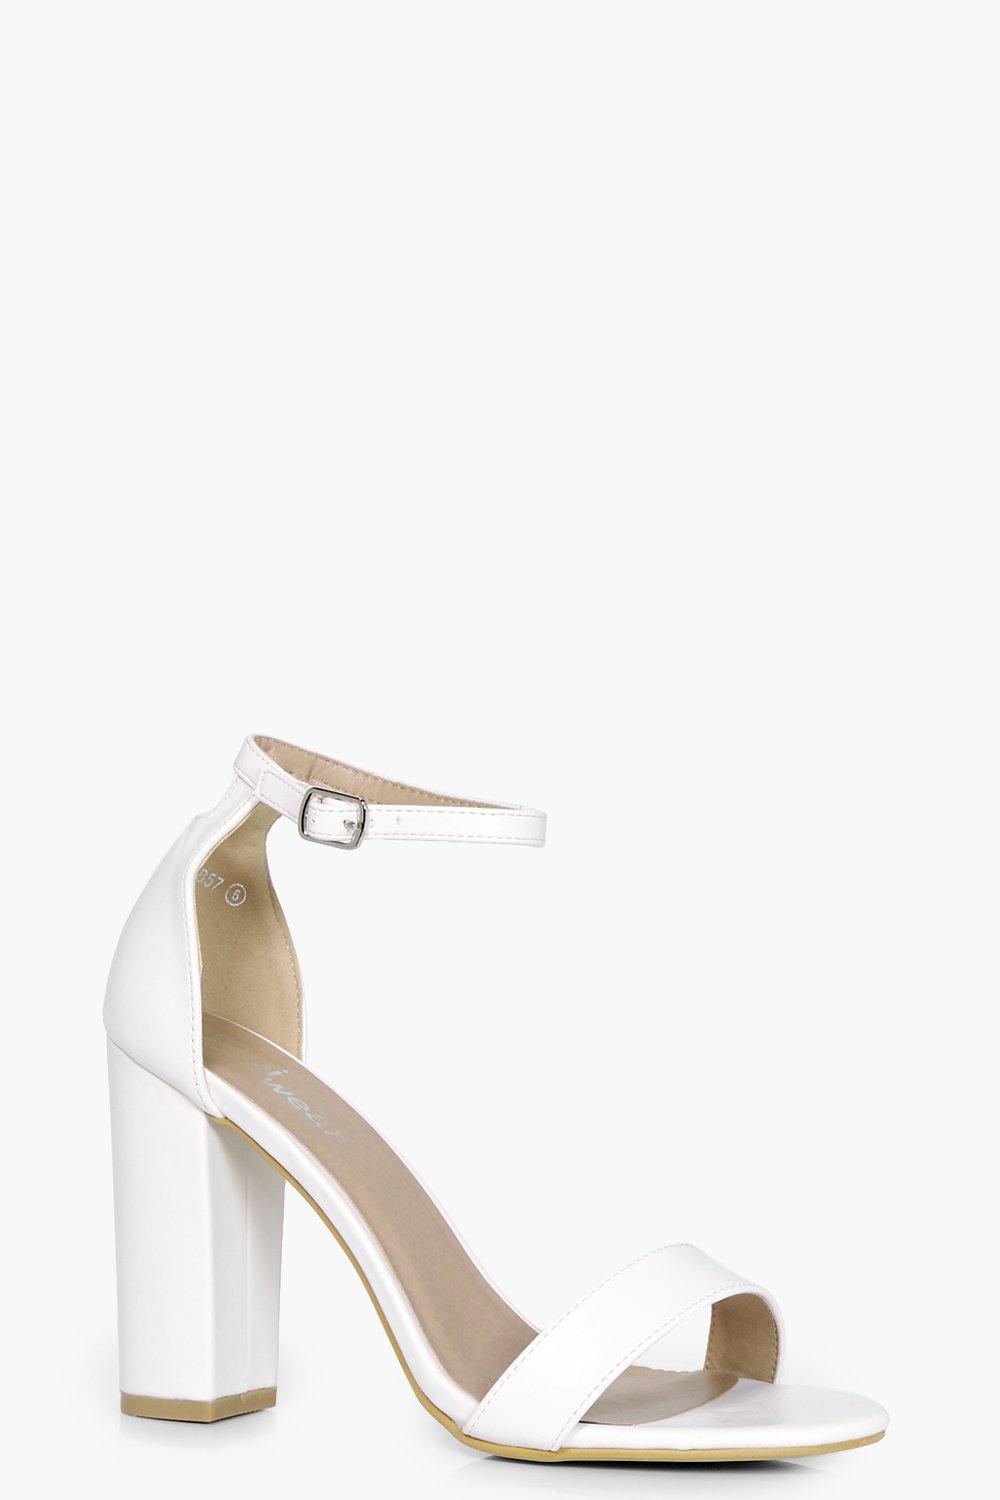 white block heel shoes uk